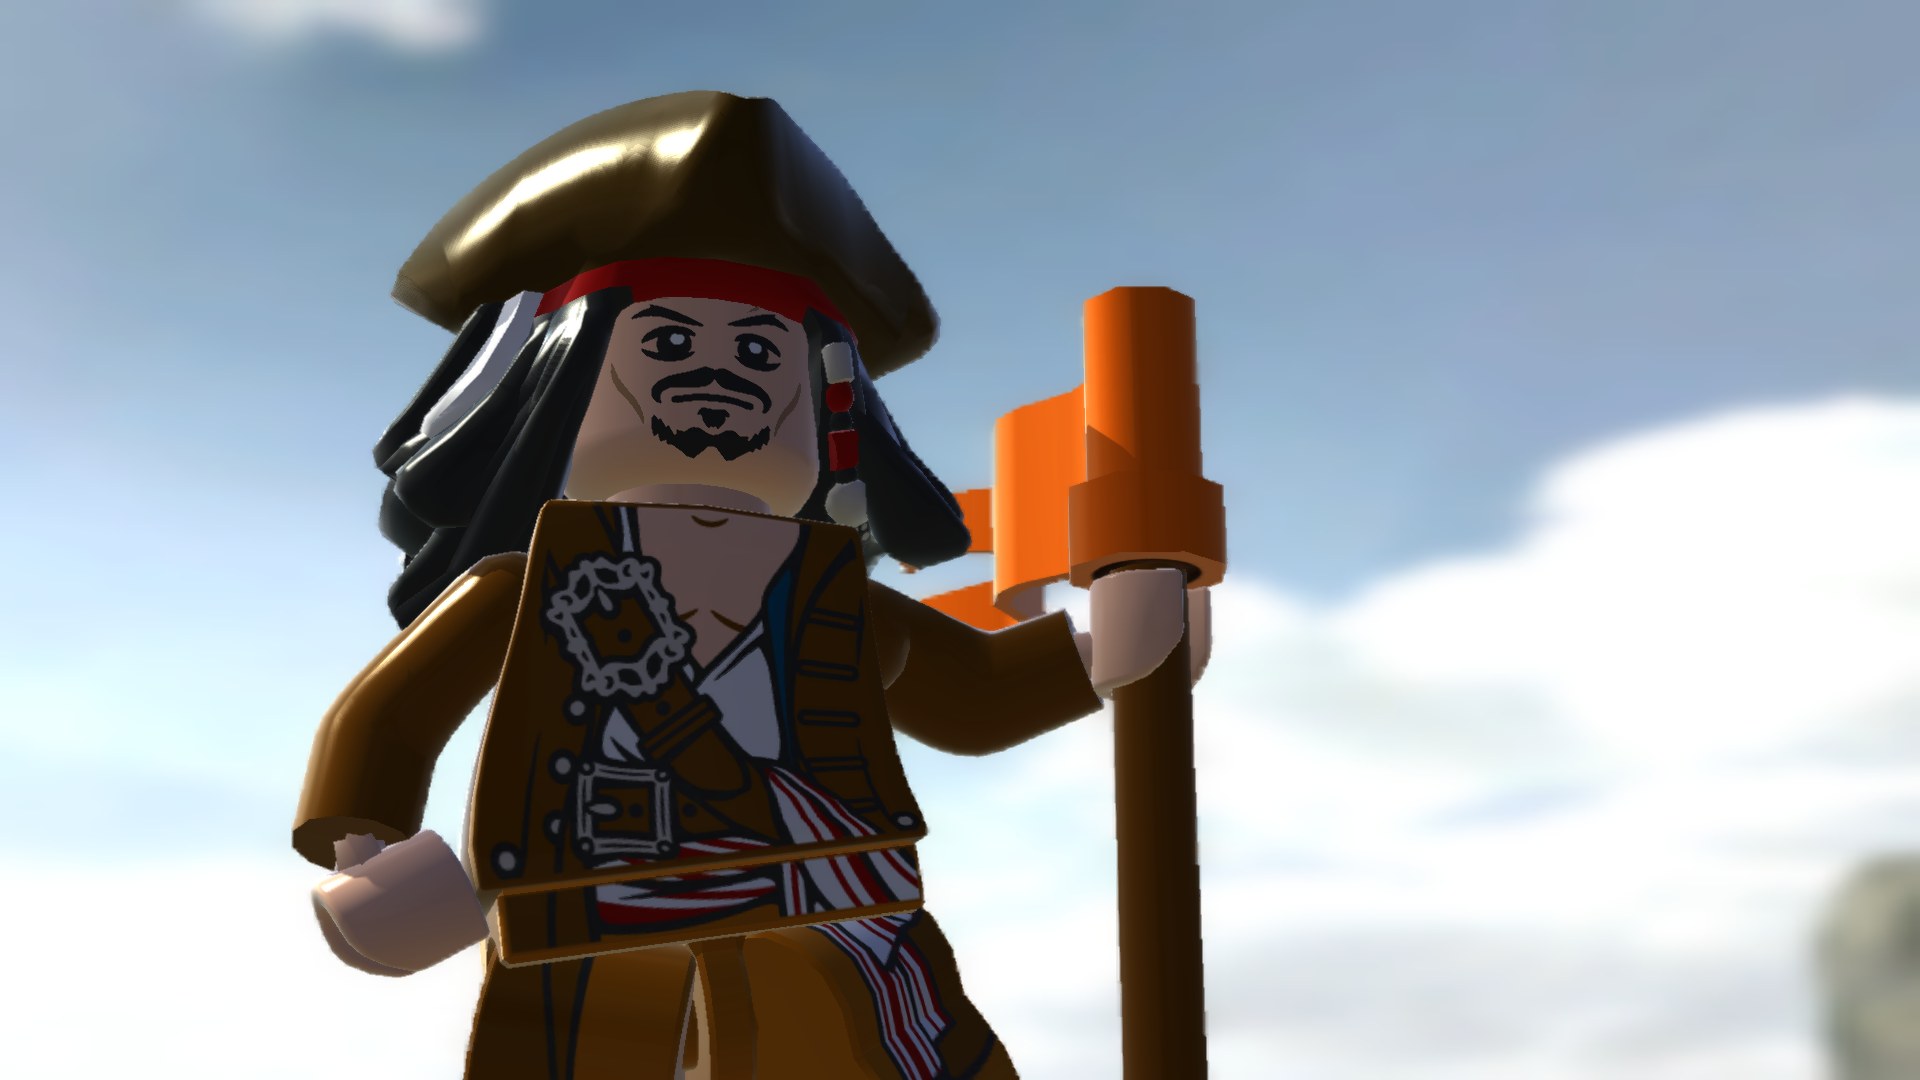 Melhores papéis de parede de Lego Pirates Of The Caribbean: The Video Game para tela do telefone